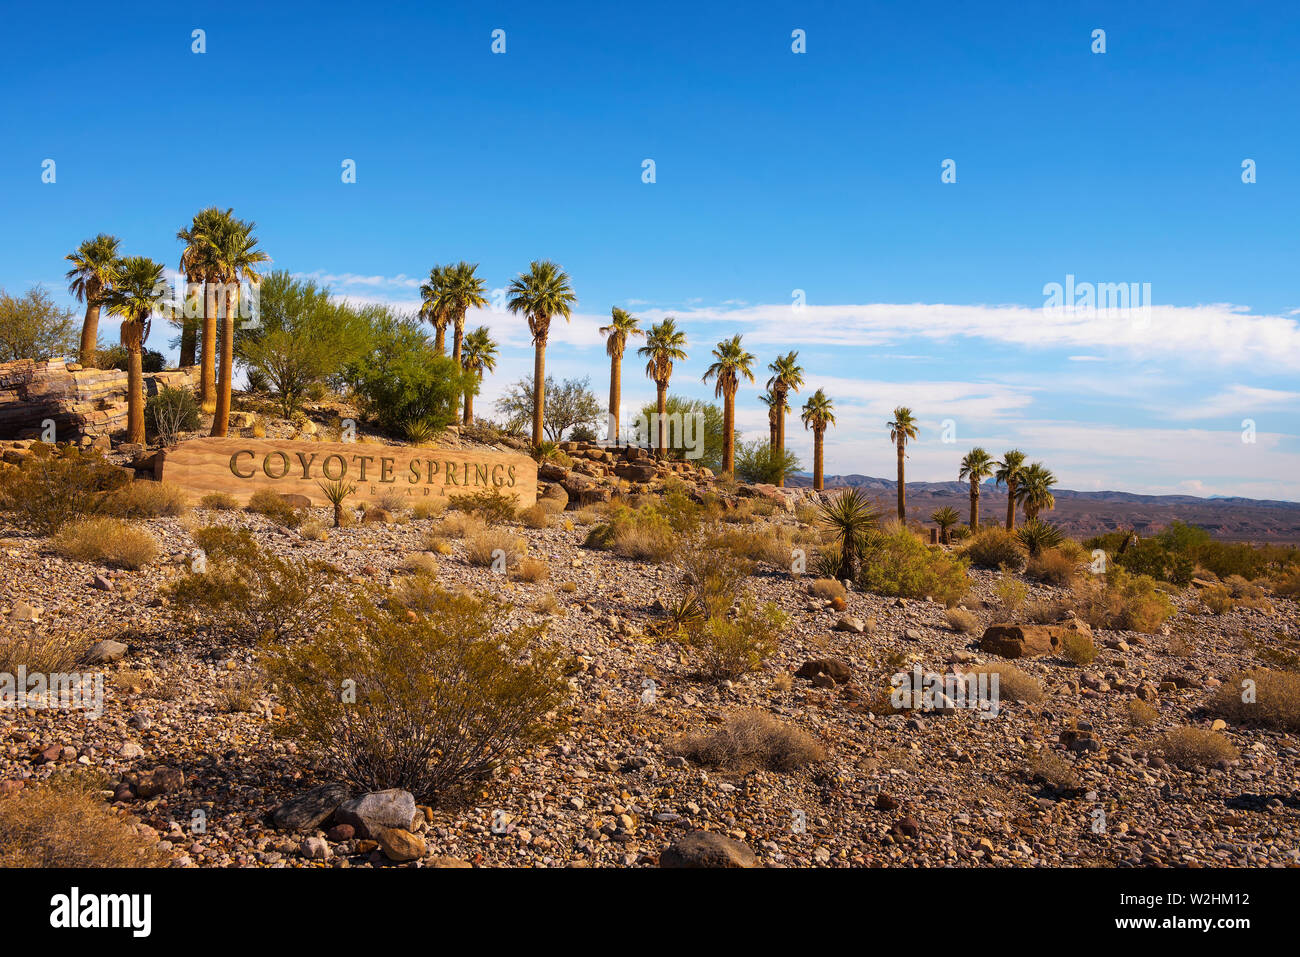 Cartel de bienvenida a la pequeña comunidad de Coyote Springs cerca de Las Vegas, en Nevada Foto de stock